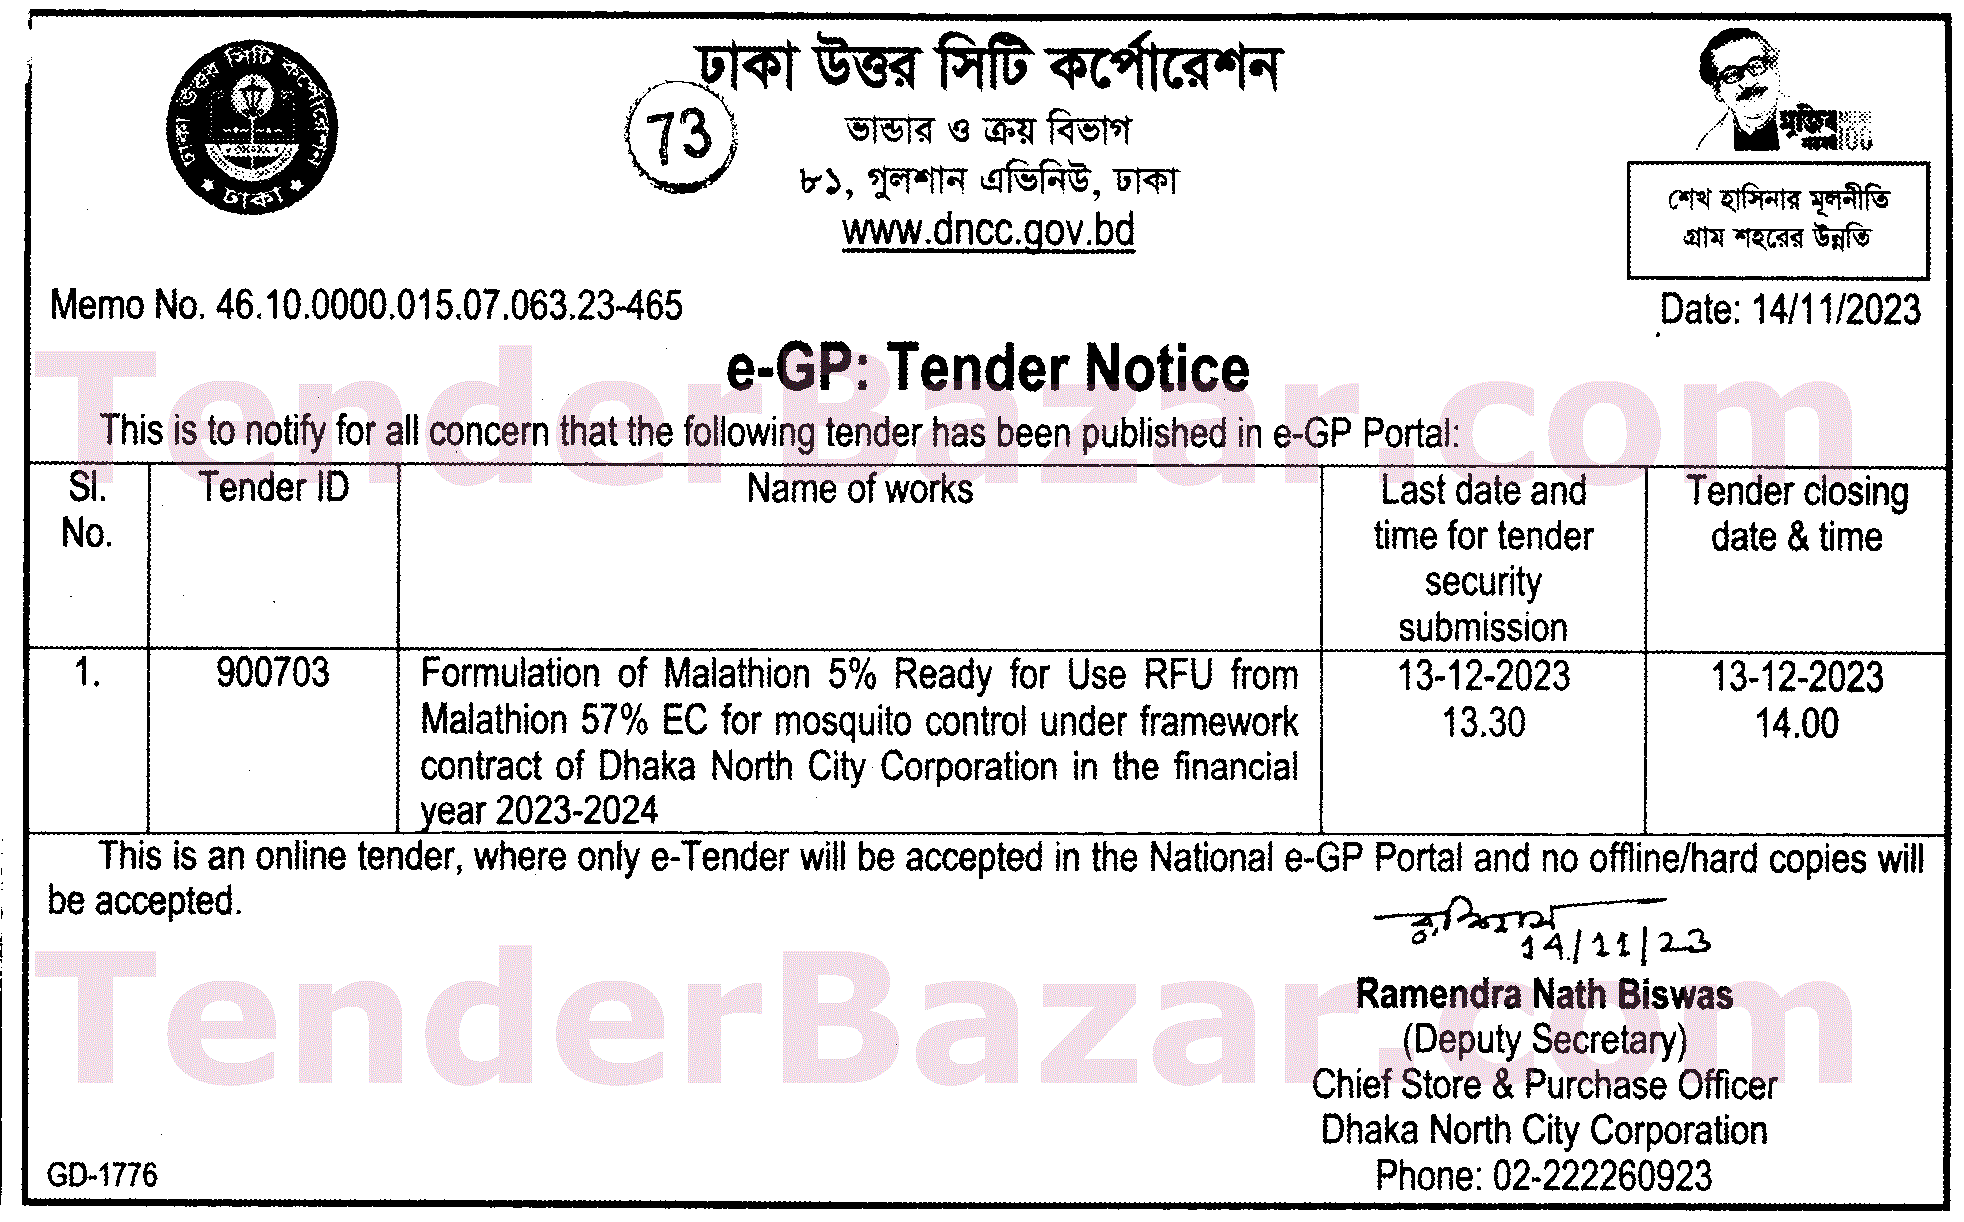 TenderBazar.com